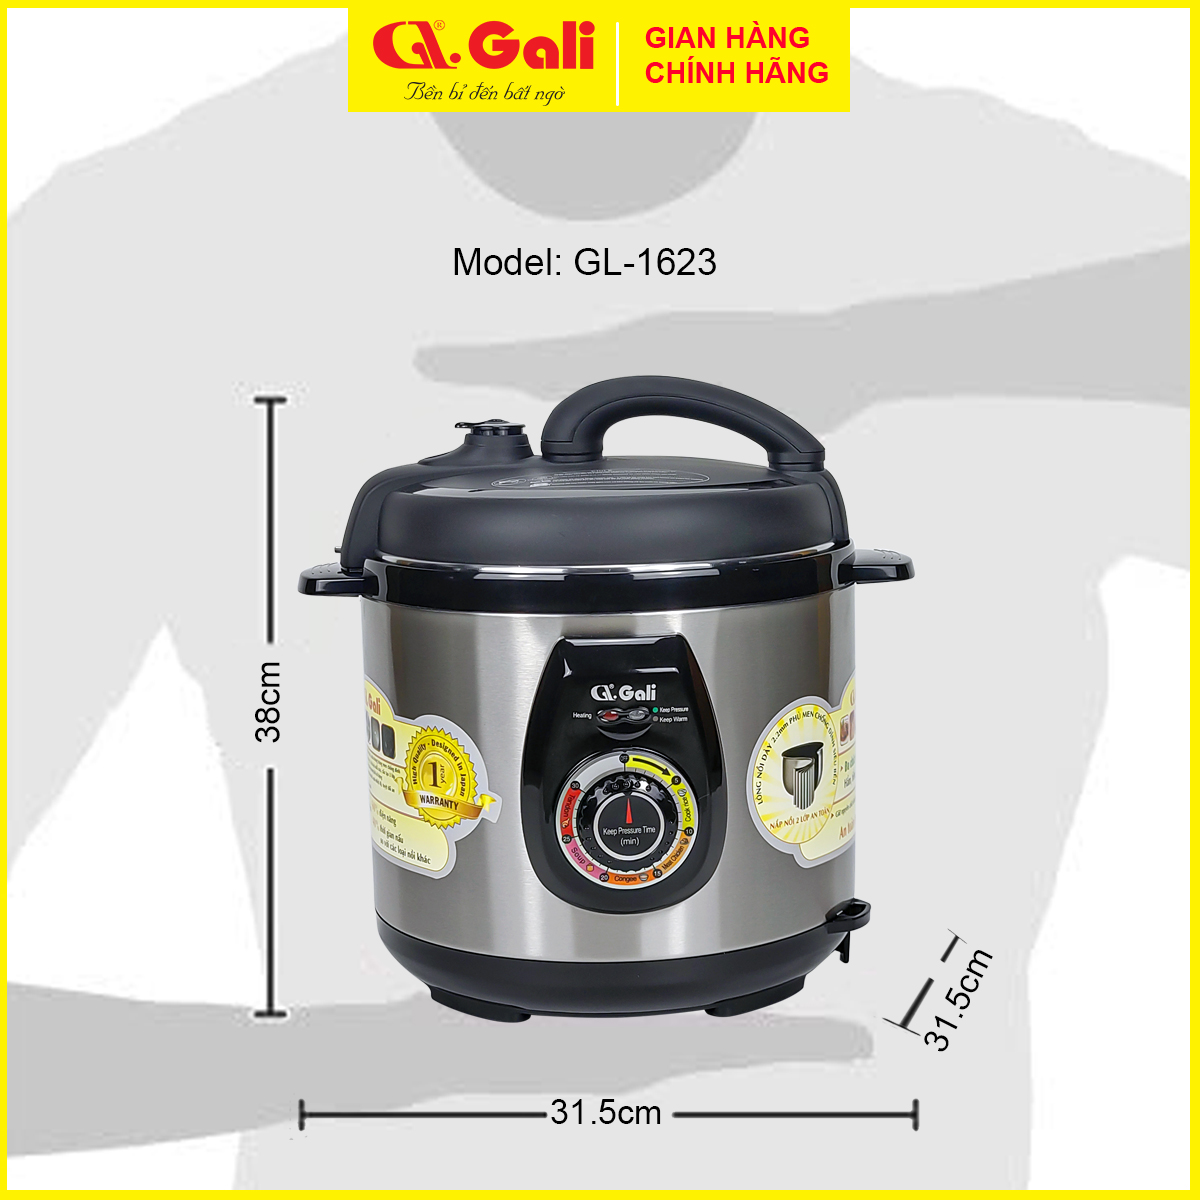 Nồi áp suất điện Gali GL-1626 6 lít, đa chức năng nấu, hầm các loại thịt, tôm cua cá, ninh đậu, nấu chè, hàng chính hãng bảo hành 24 tháng